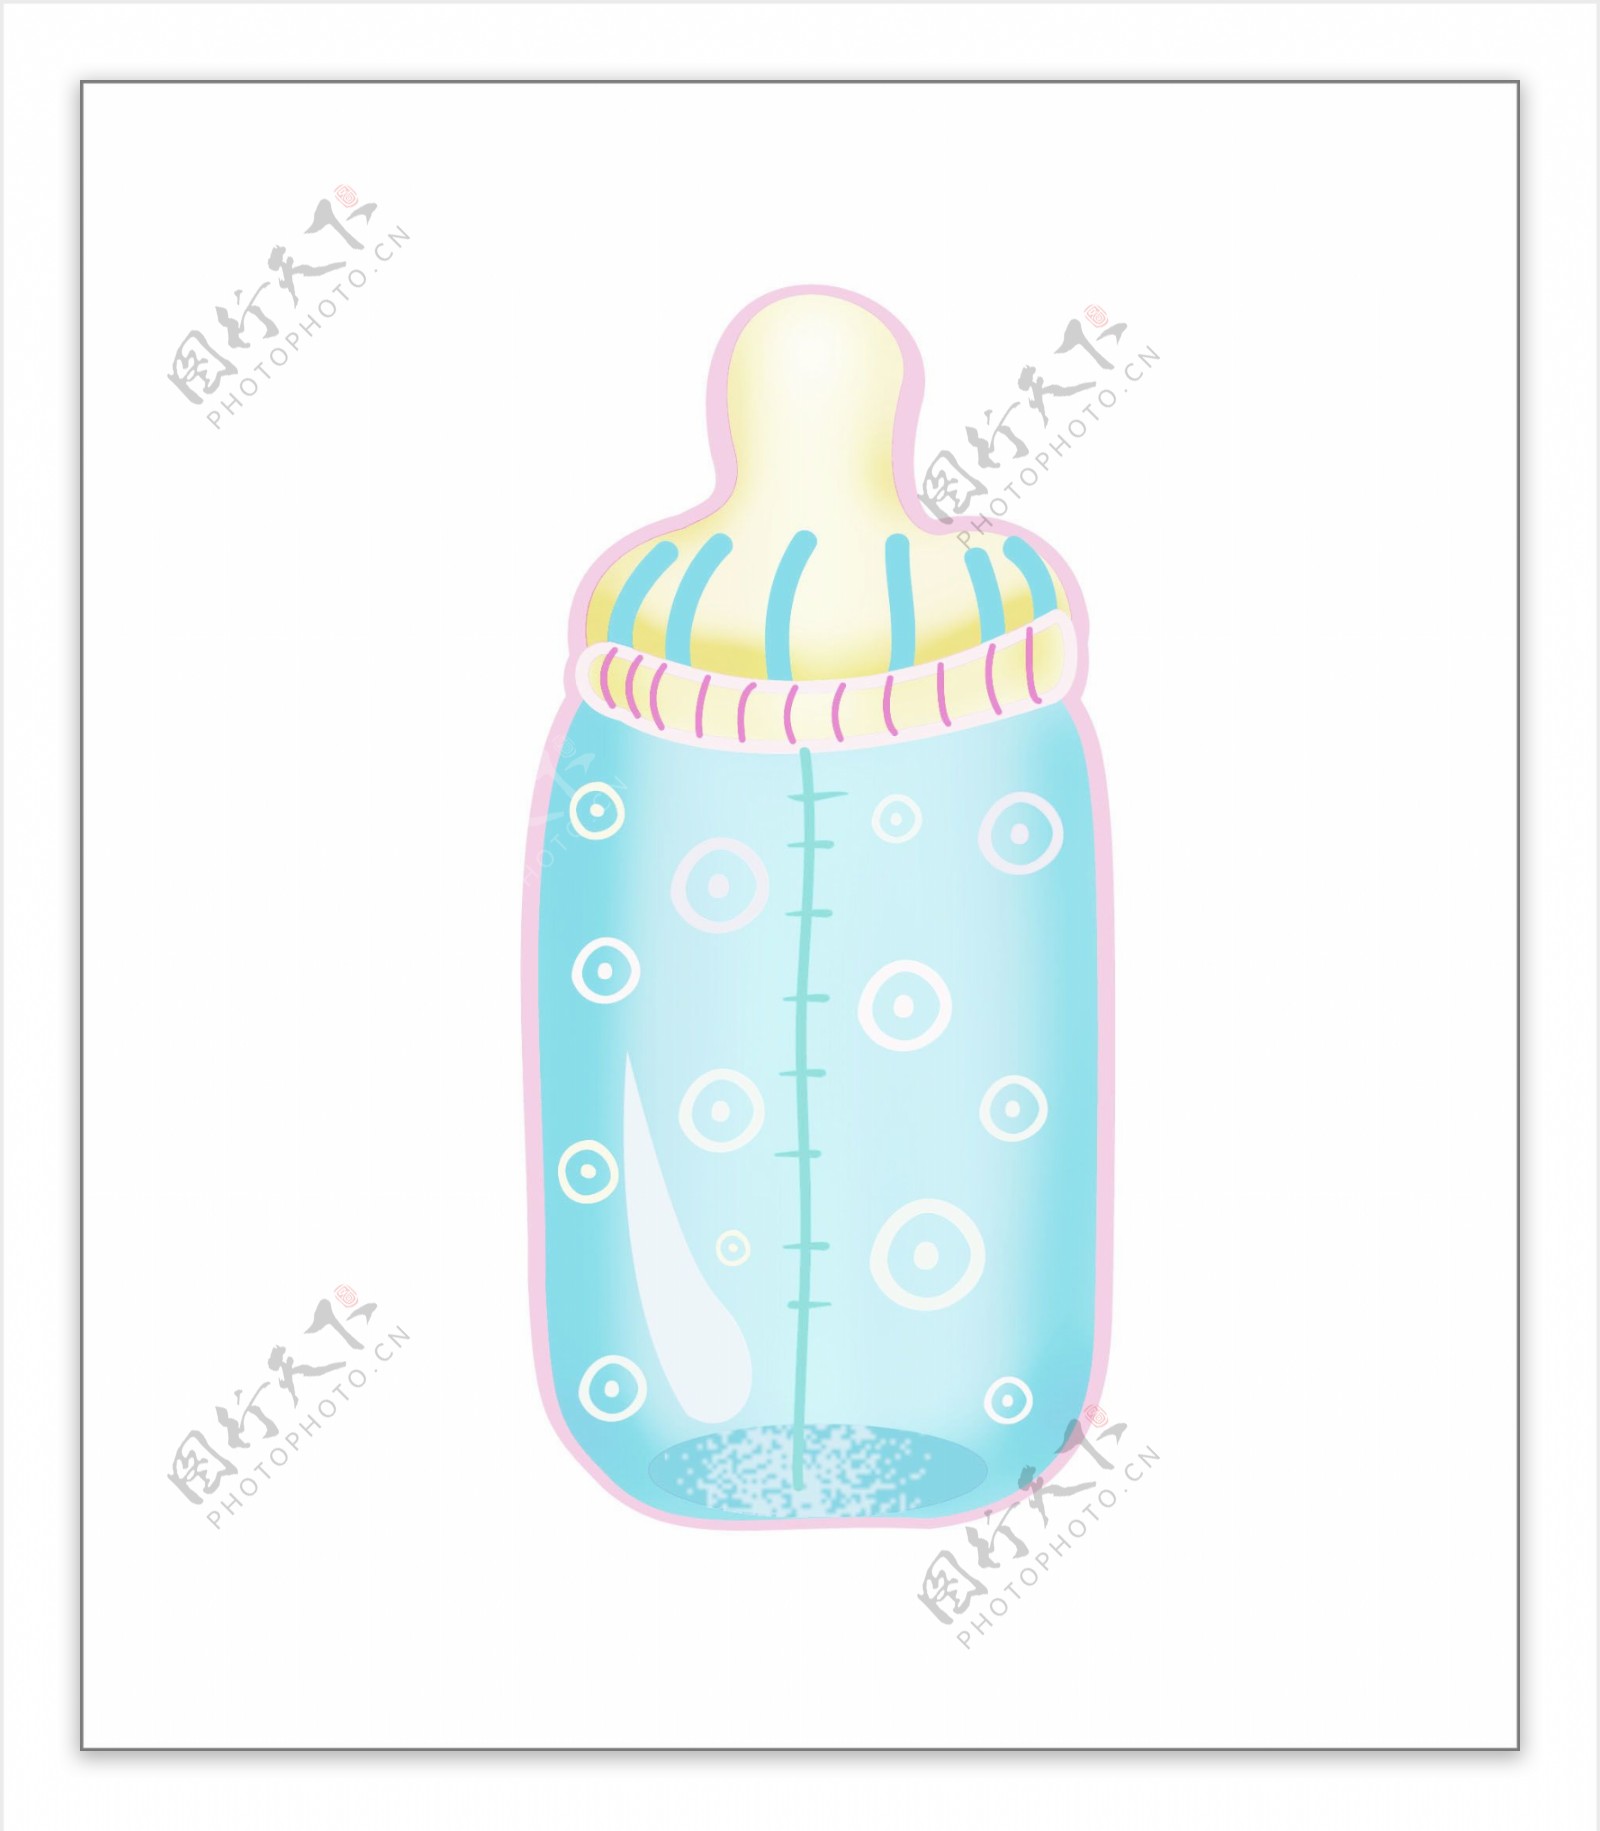 婴儿物品奶瓶图片